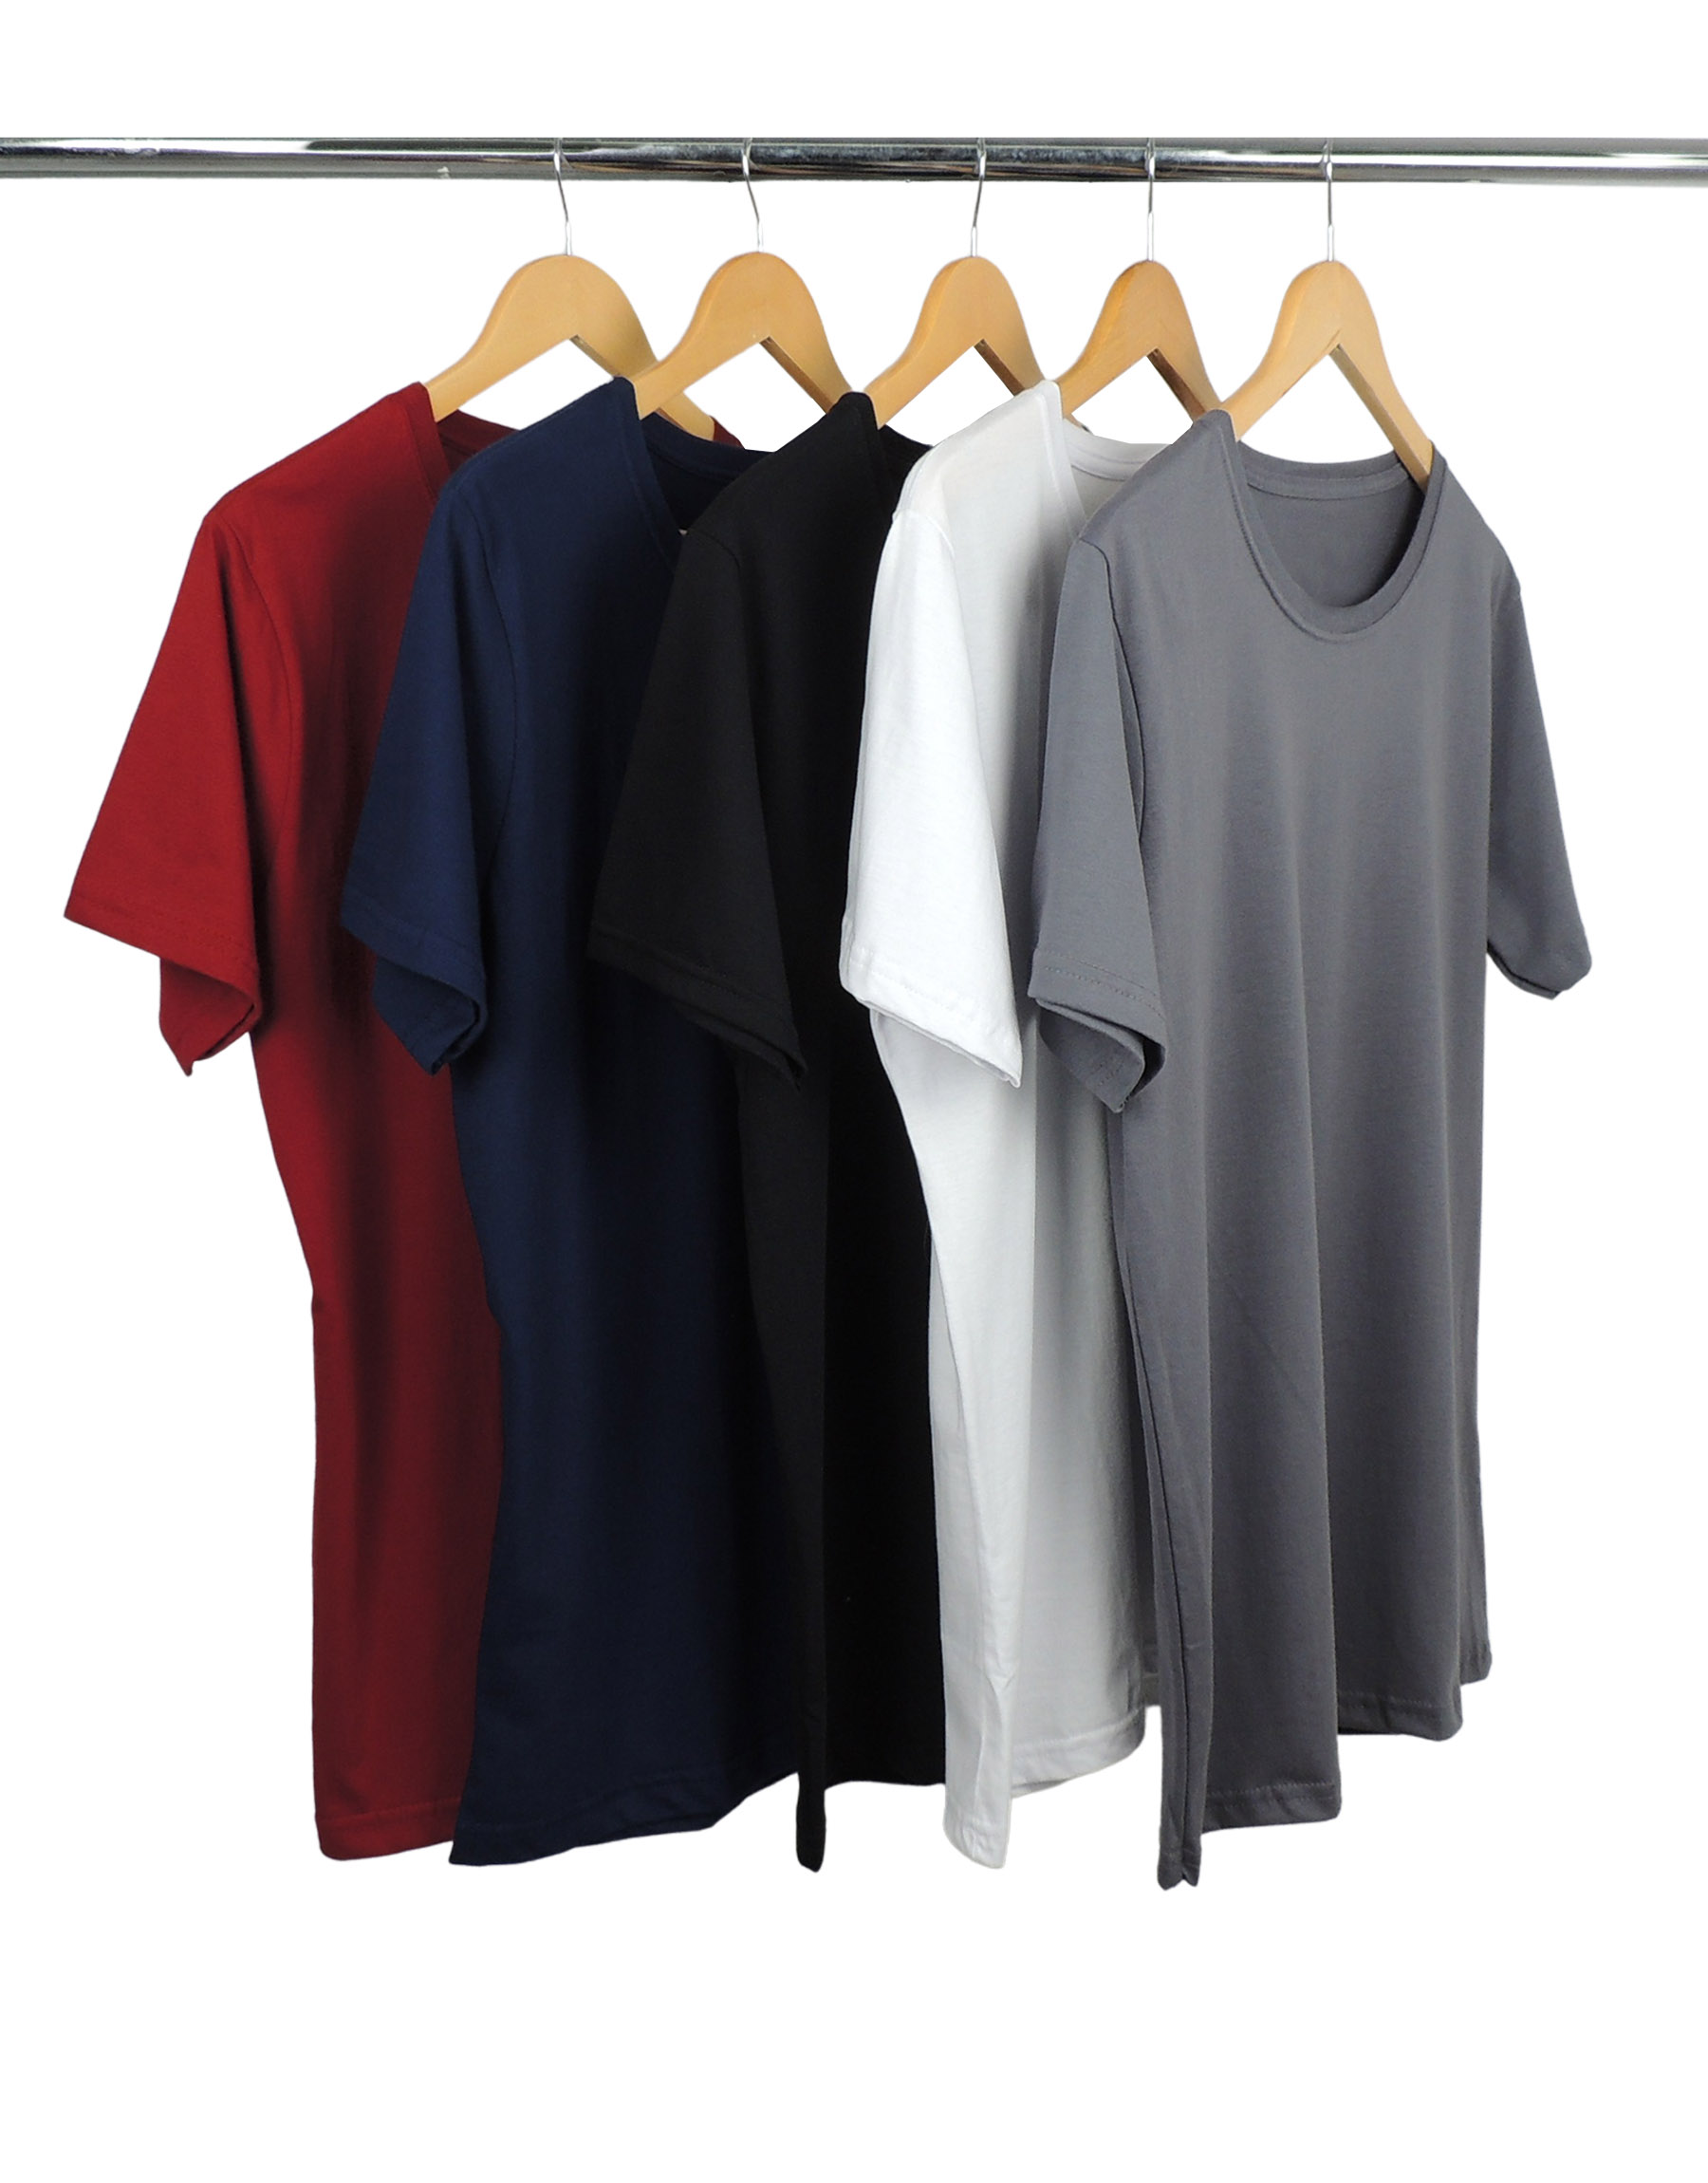 Kit 5 Camisetas Masculinas de Algodão Premium 17